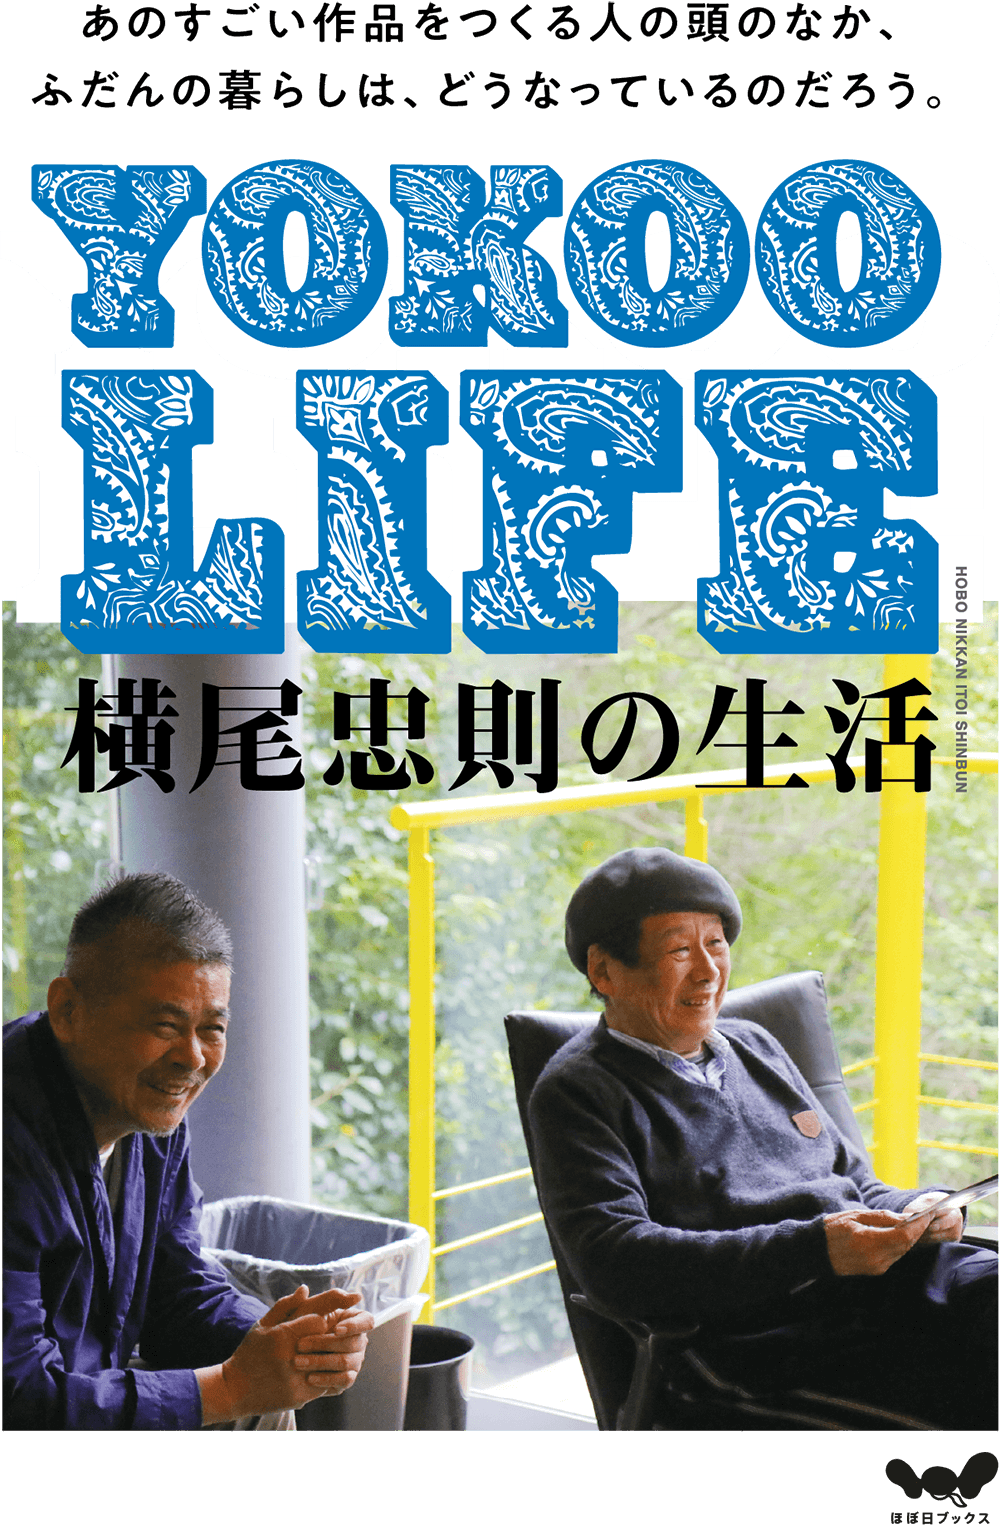 YOKOO LIFE「横尾忠則の生活」2021年夏